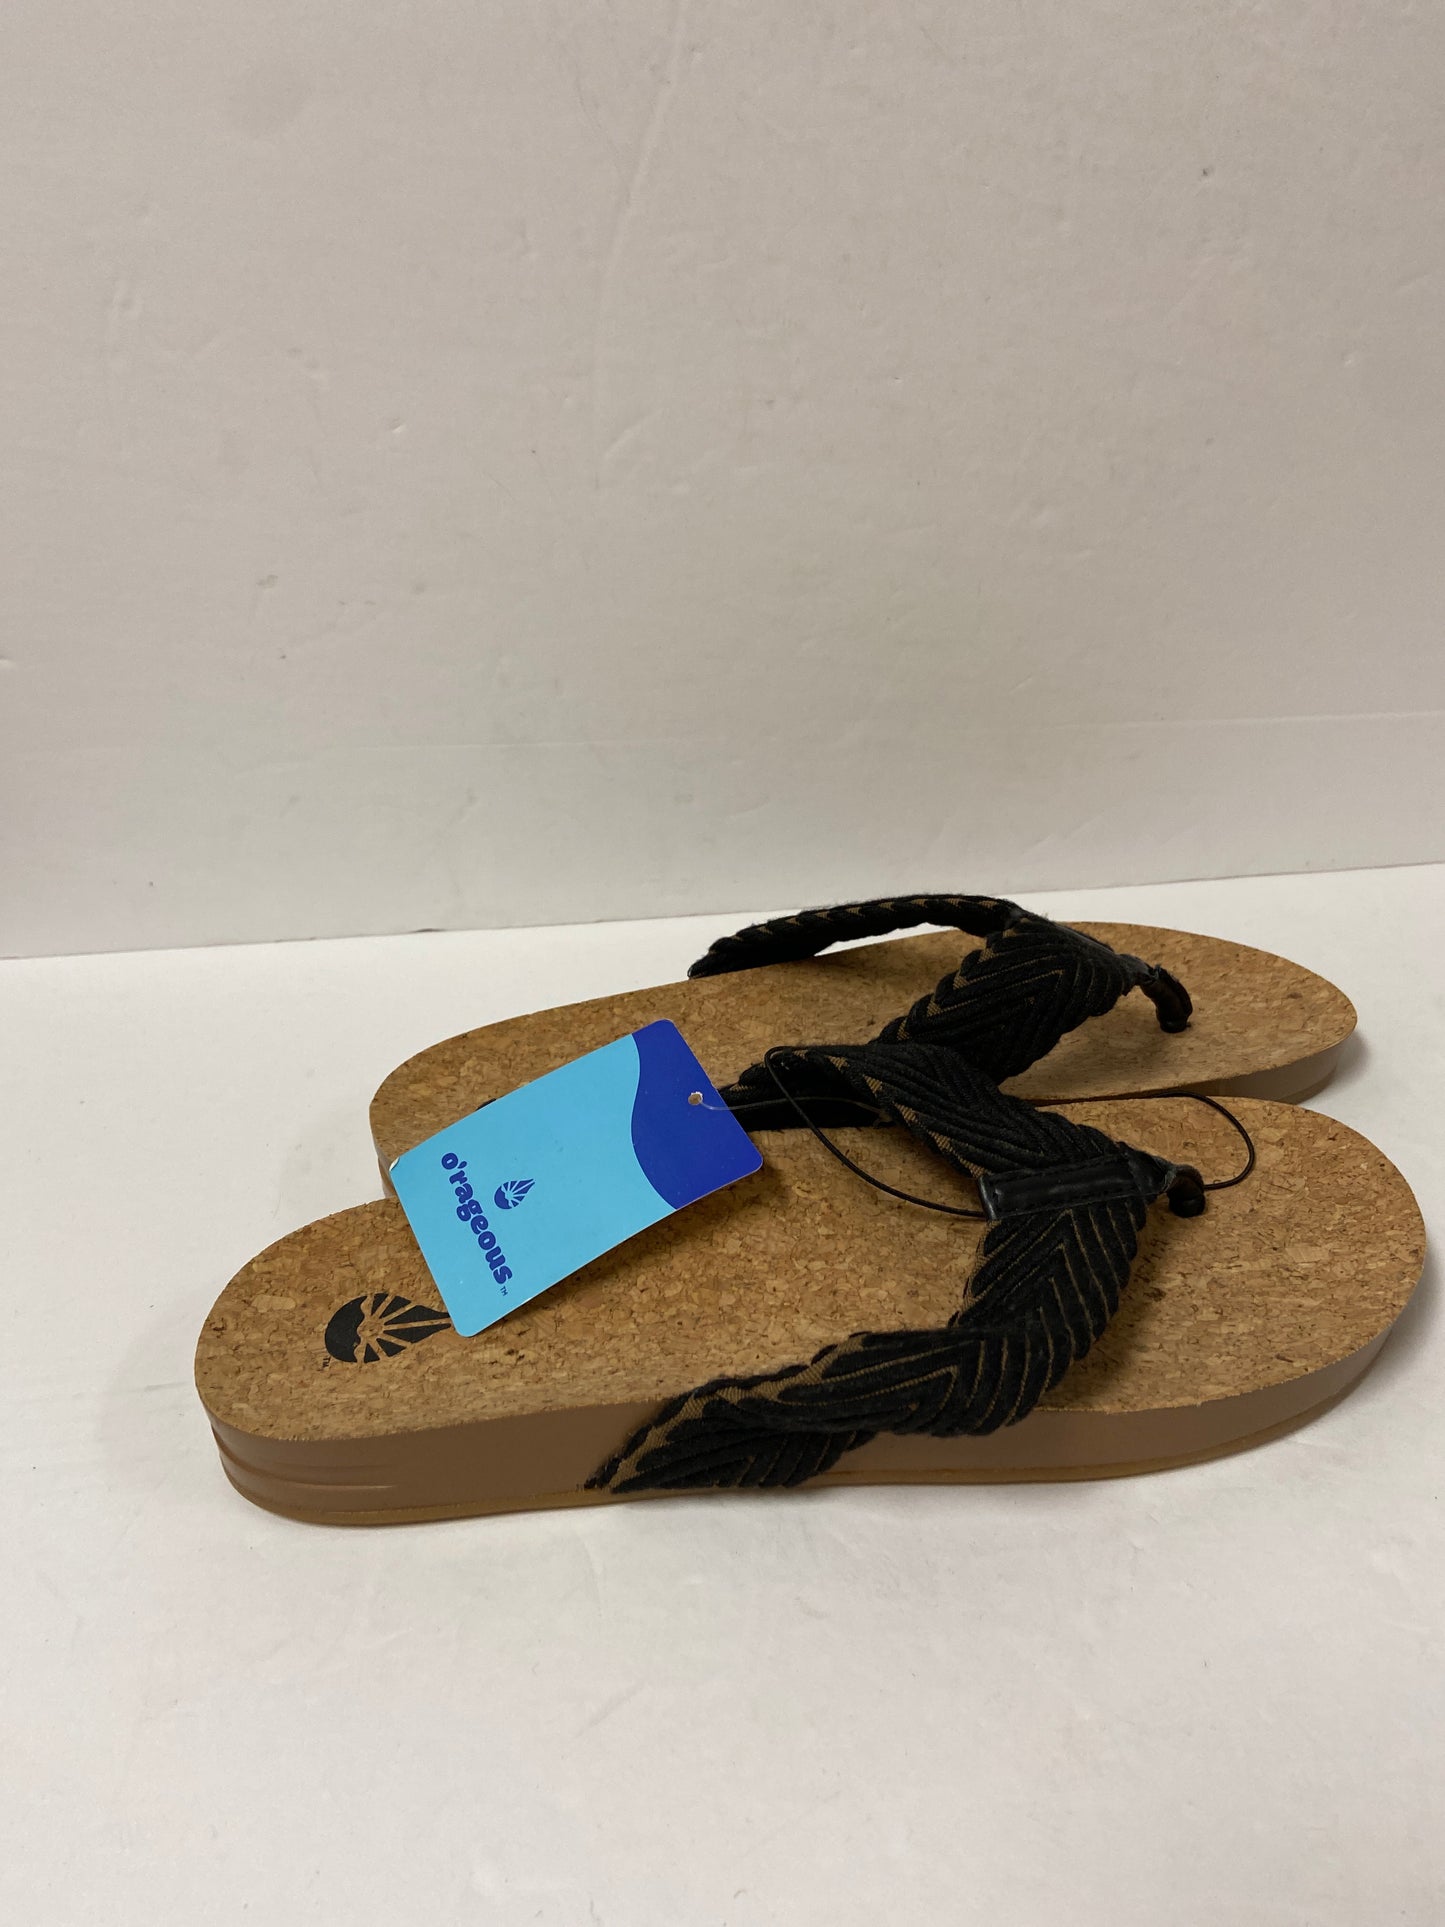 Sandals Flip Flops By Cmc  Size: 9